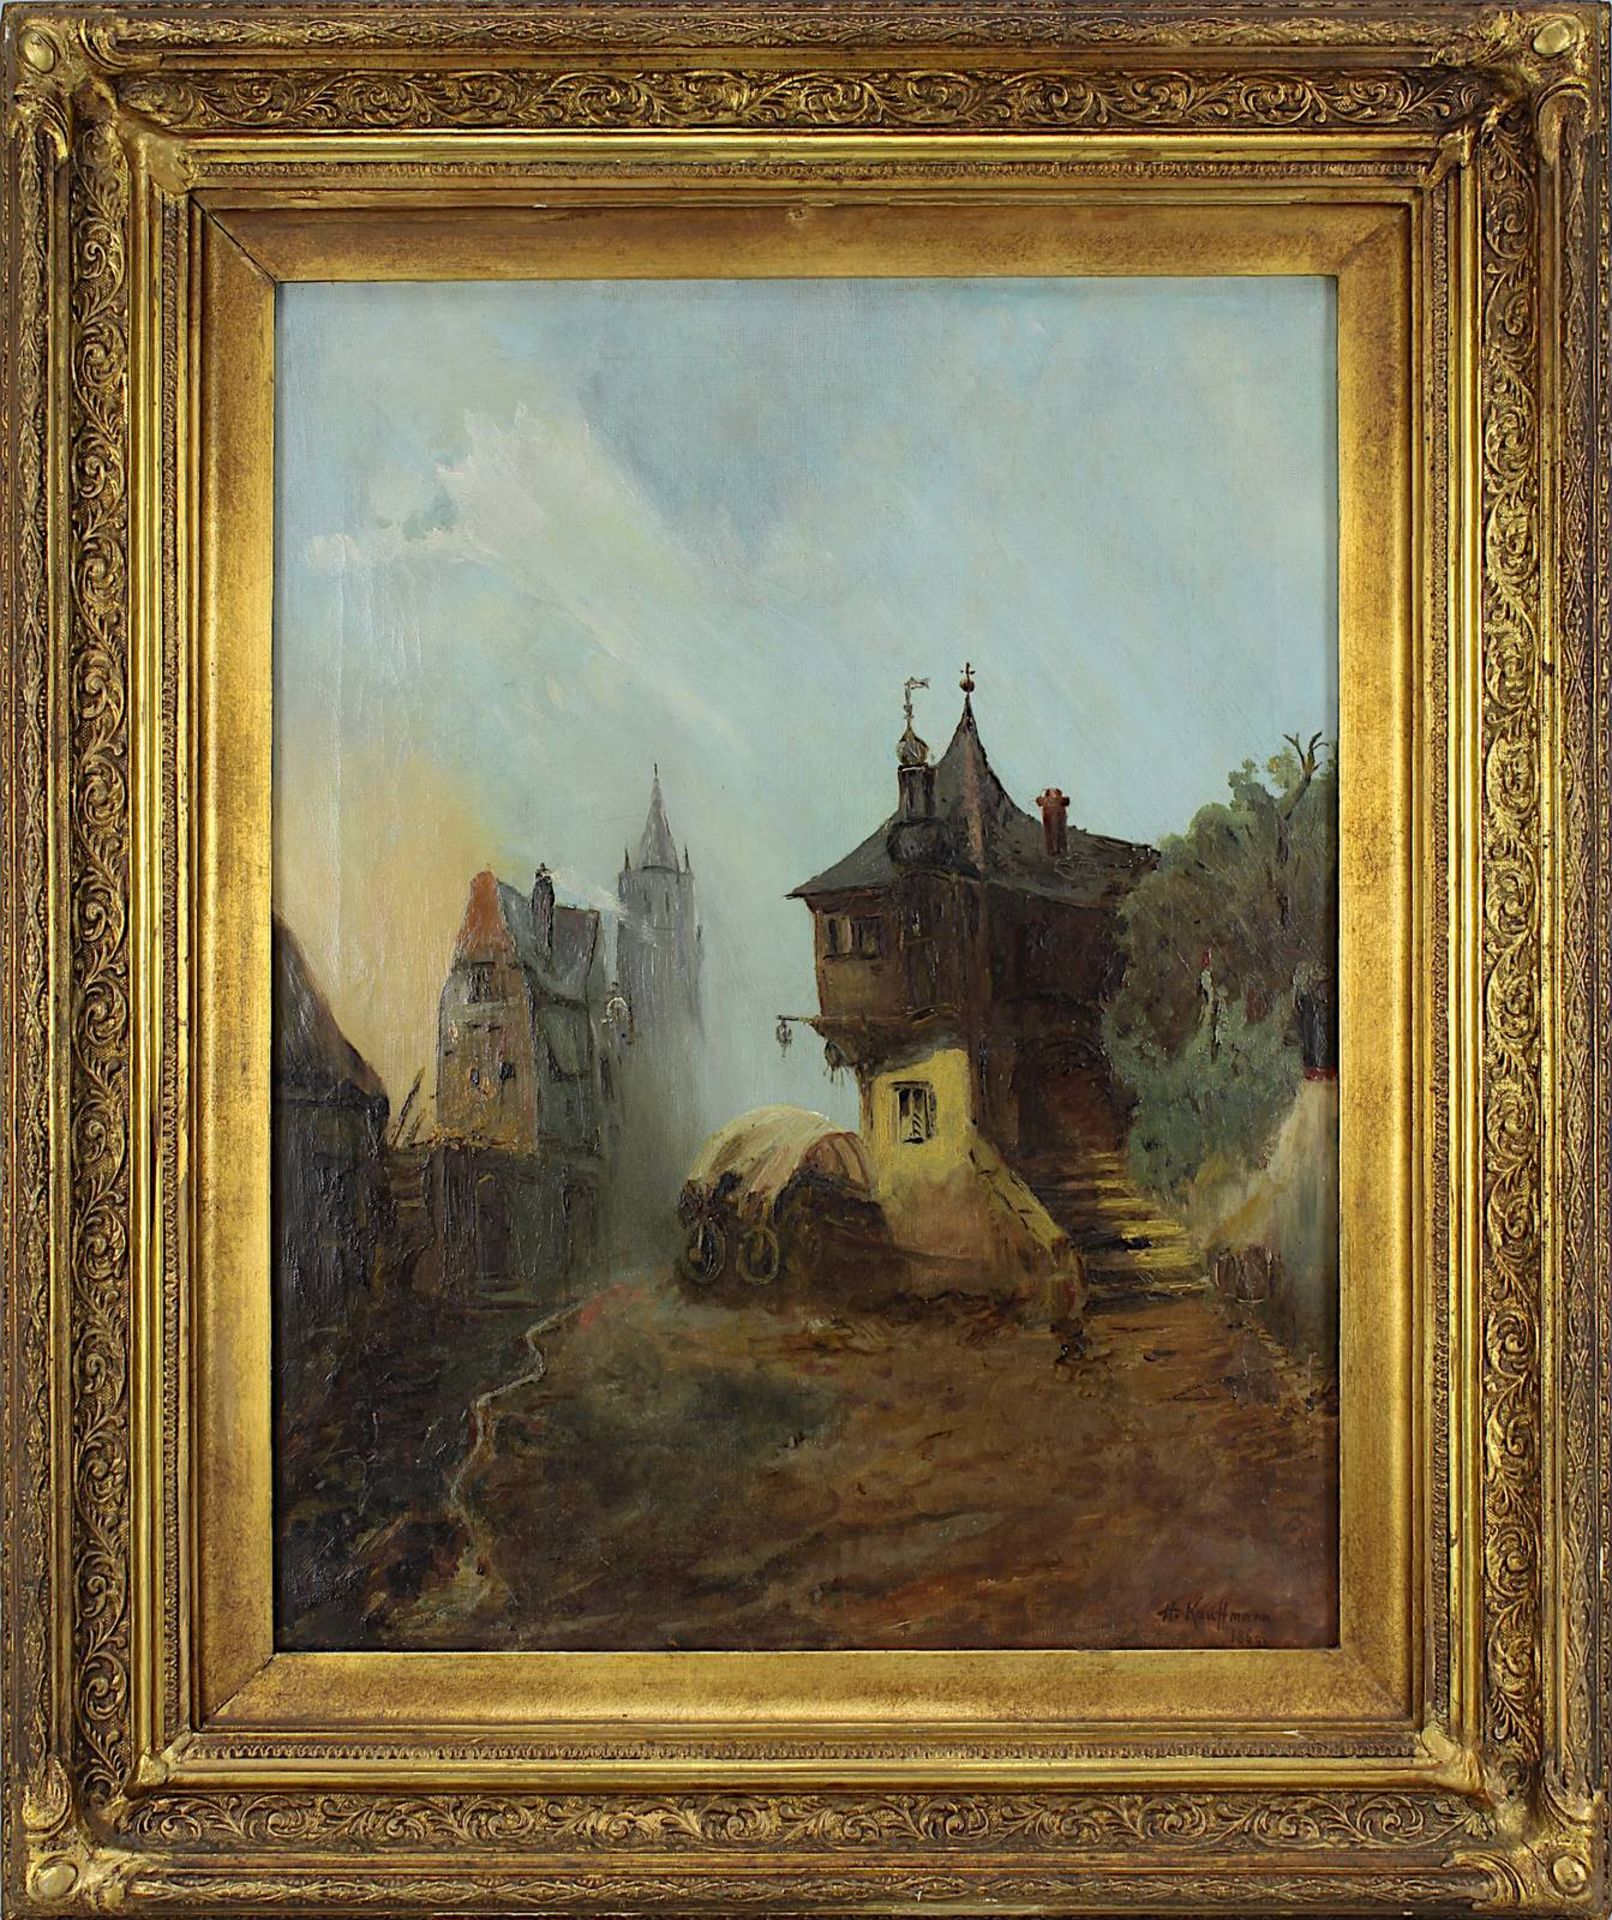 Kauffmann, (Herrmann) deutscher Maler um 1860, mittelalterliche Dorfszene, Öl auf Leinwand, rechts